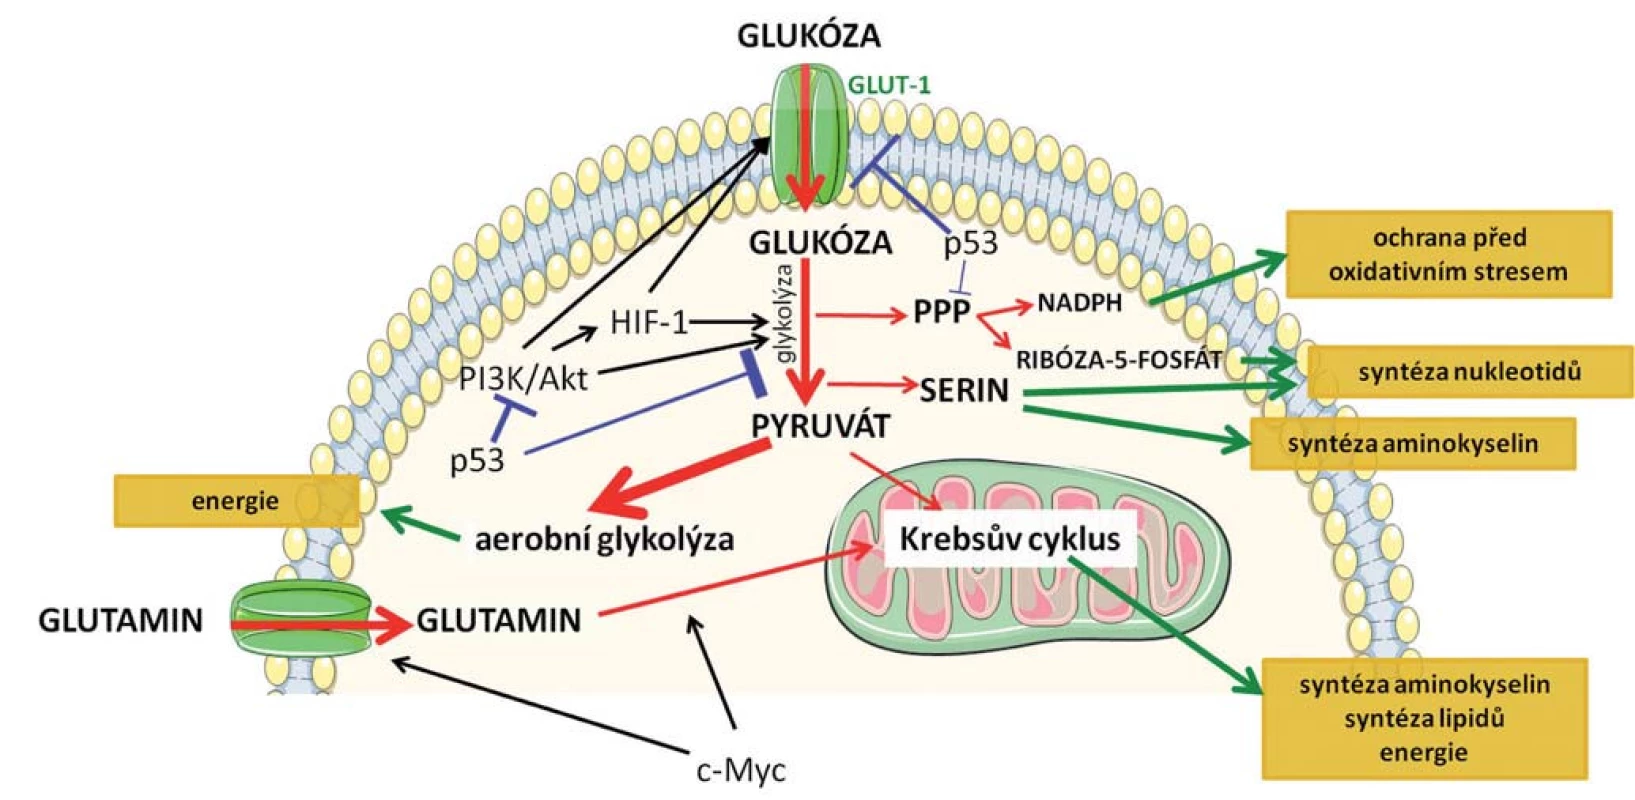 Schematické znázornění základních metabolických drah, k jejichž přeprogramování dochází v nádorových buňkách.
Červenými šipkami je označen metabolizmus glukózy, jejíž zvýšený příjem je charakteristický pro nádorové buňky a metabolizmus glutaminu. Modře je znázorněn inhibiční vliv nádorového supresoru p53 a zeleně jsou označeny efekty jednotlivých drah na buňku. Klíčové mechanizmy spojené s přeprogramováním metabolizmu jsou podrobněji popsané v textu.